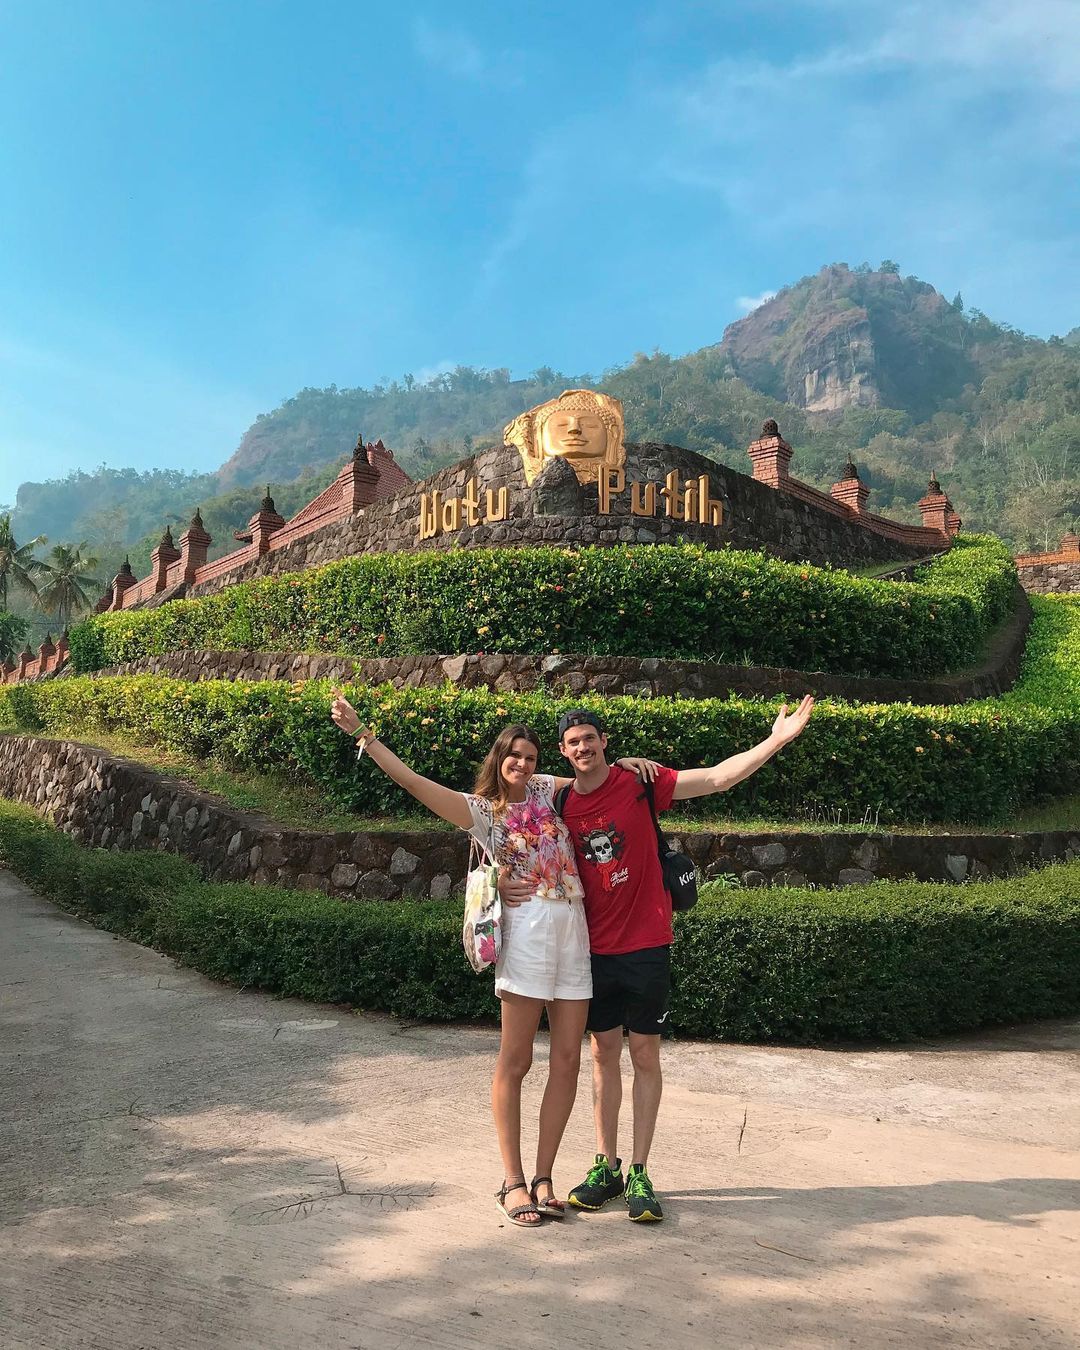 Daya Tarik Wisata Watu Putih Borobudur Image From @listosyavolar